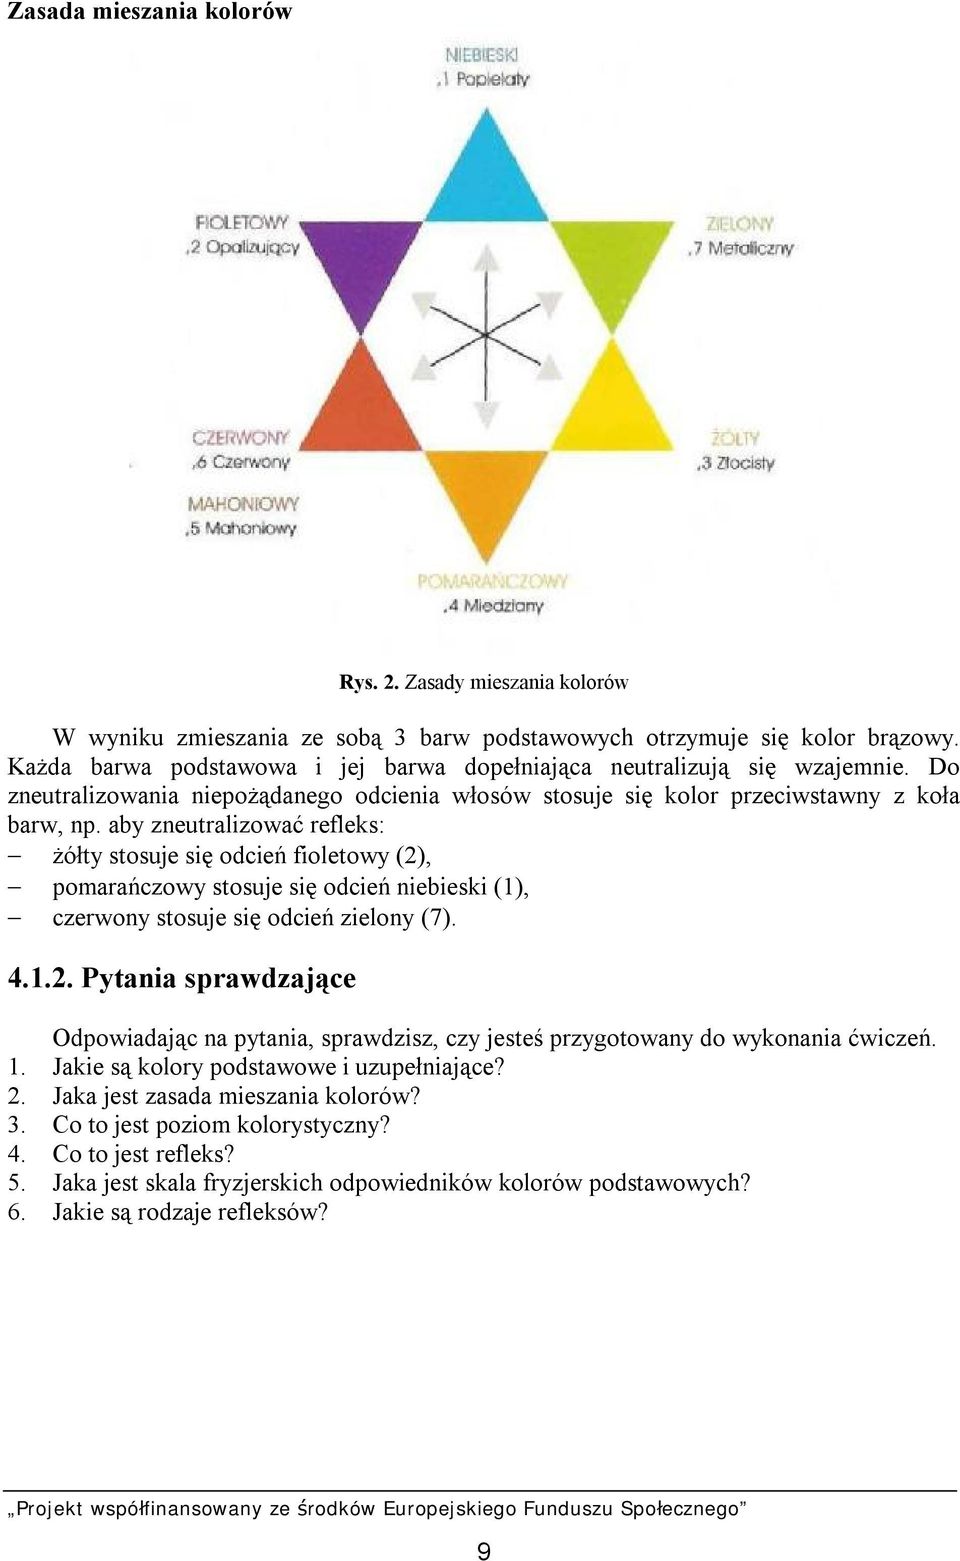 aby zneutralizować refleks: żółty stosuje się odcień fioletowy (2), pomarańczowy stosuje się odcień niebieski (1), czerwony stosuje się odcień zielony (7). 4.1.2. Pytania sprawdzające Odpowiadając na pytania, sprawdzisz, czy jesteś przygotowany do wykonania ćwiczeń.